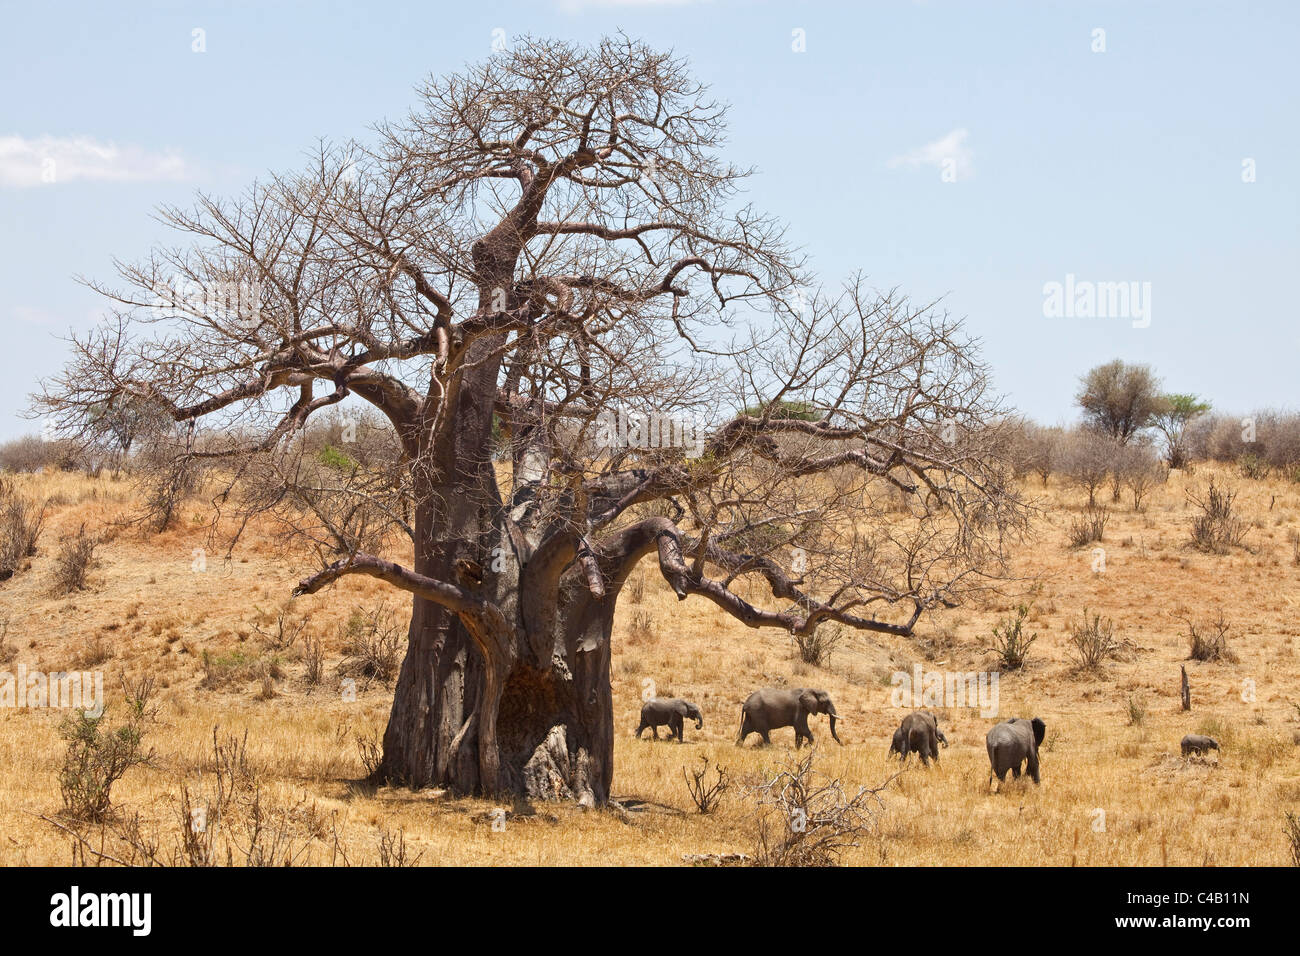 La Tanzanie, Tarangire. Un troupeau d'éléphants passe devant un énorme baobab. Les deux sont ce qui rend célèbre de Tarangire. Banque D'Images